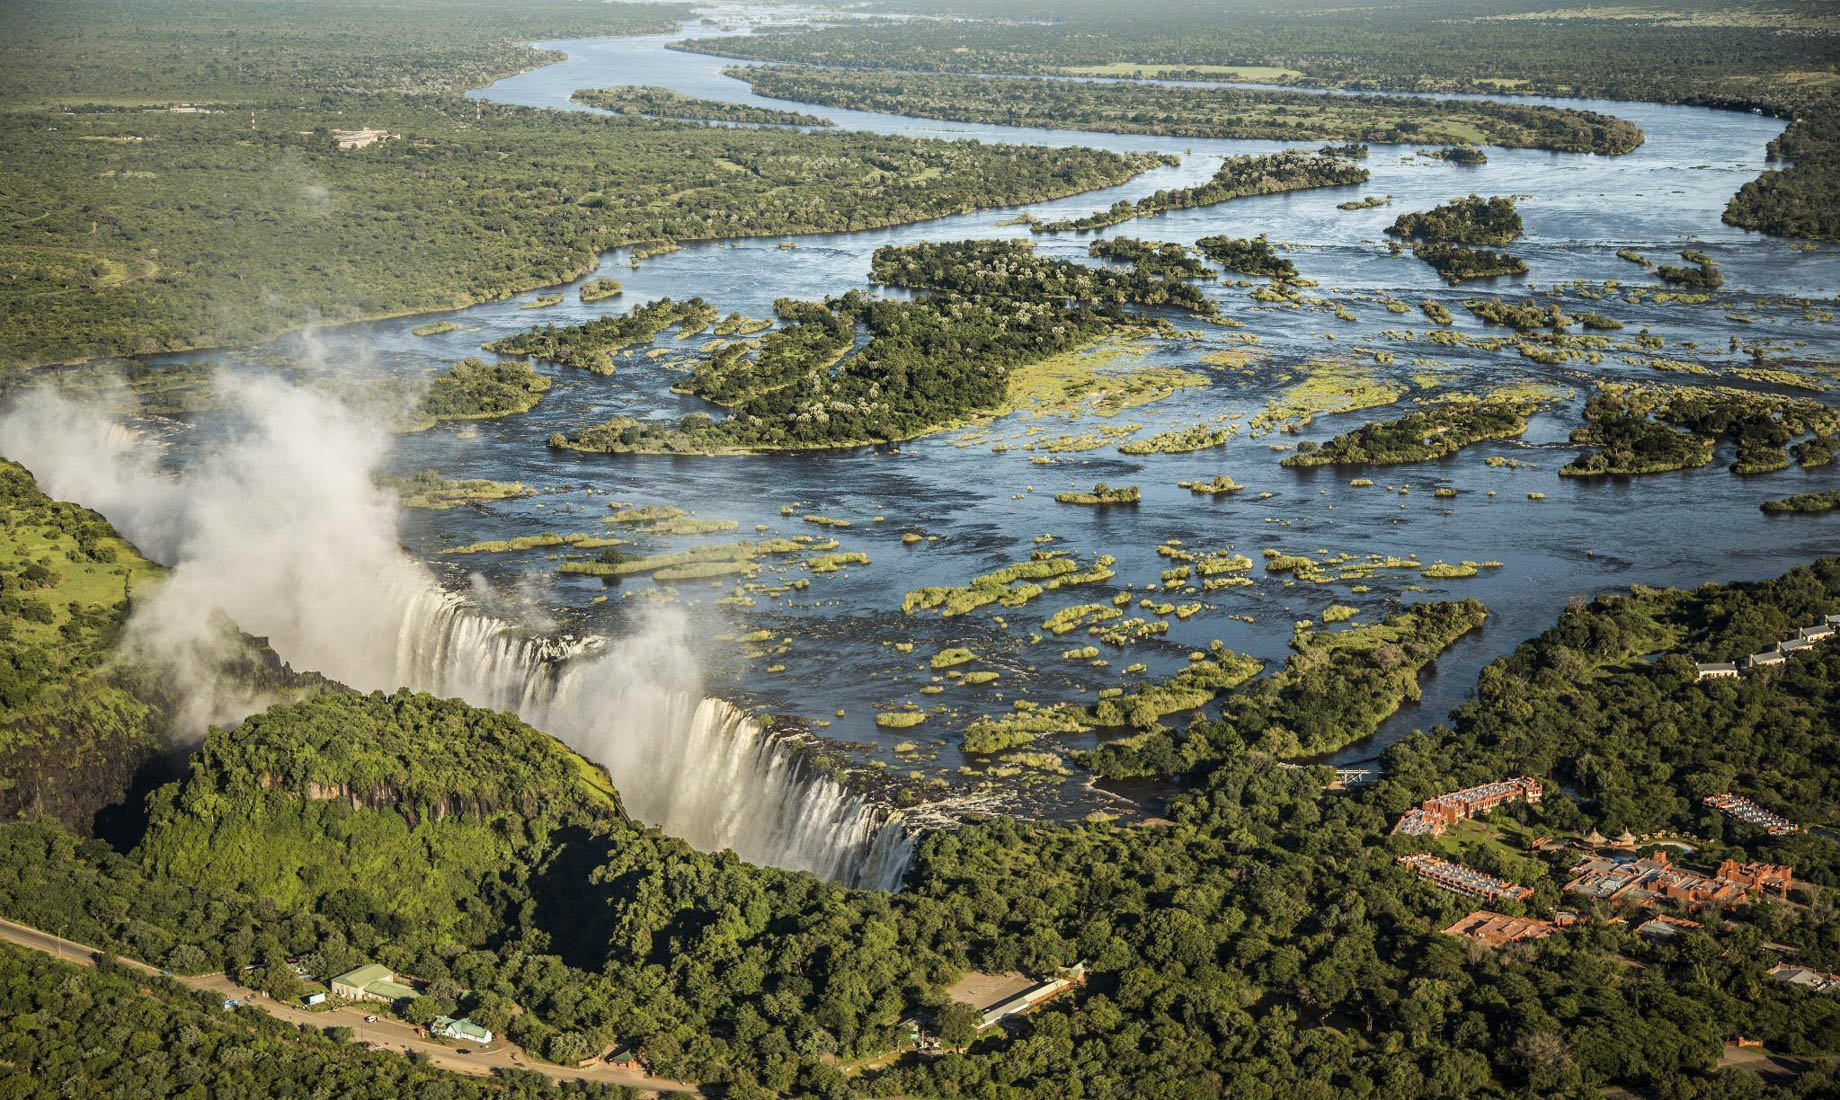 Avani Victoria Falls Resort – Livingstone, Zambia – Victoria Falls Aerial View